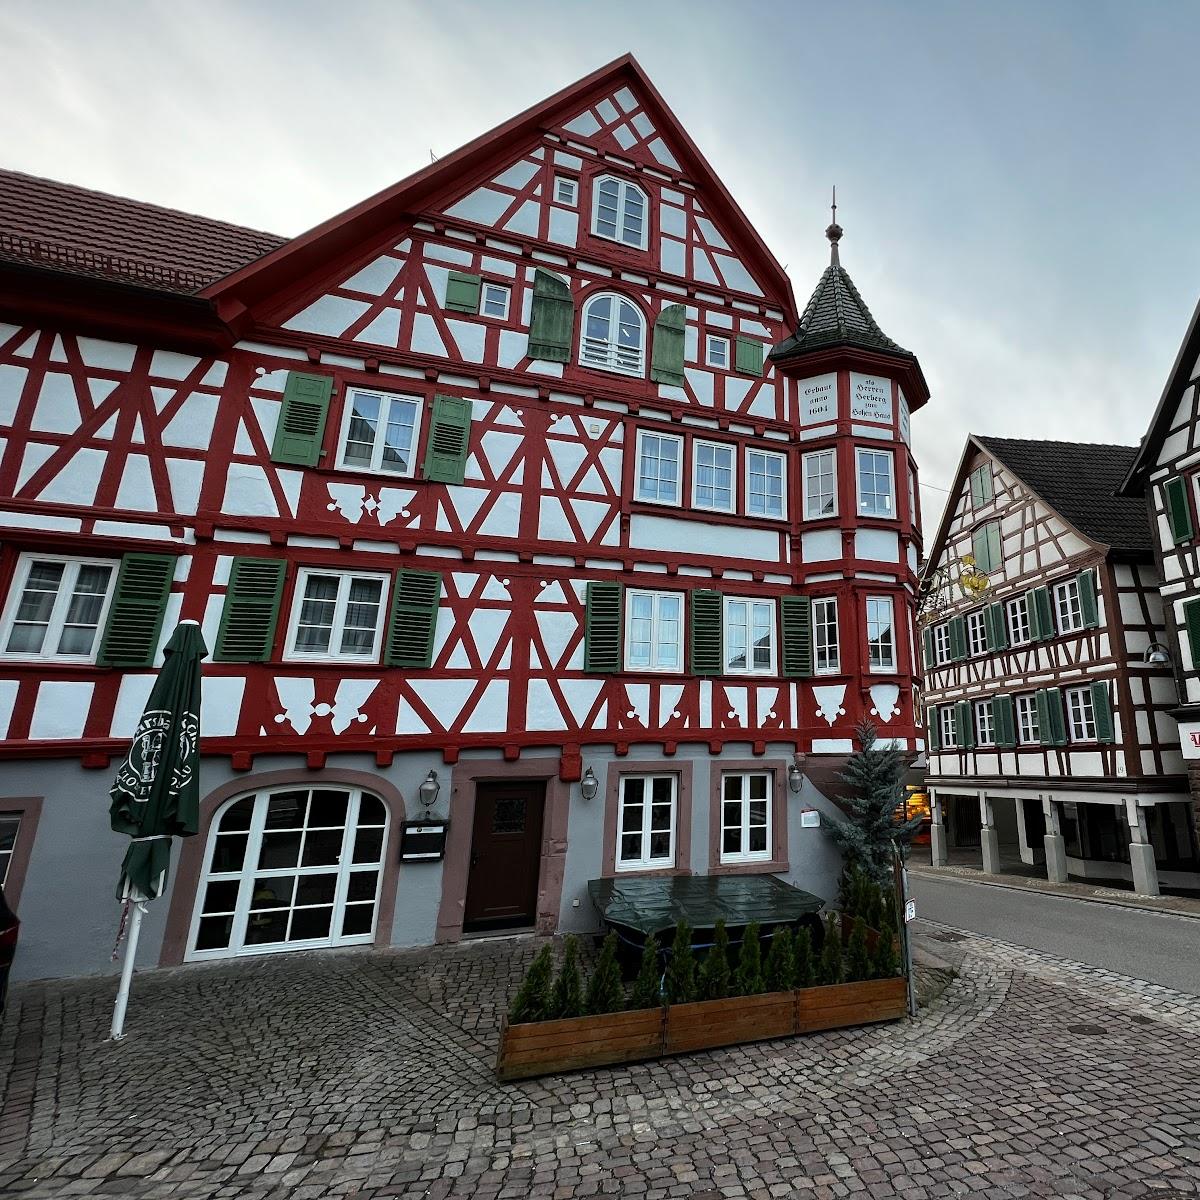 Restaurant "Adler  Boutique Hotel und Restaurant im Schwarzwald" in Schiltach